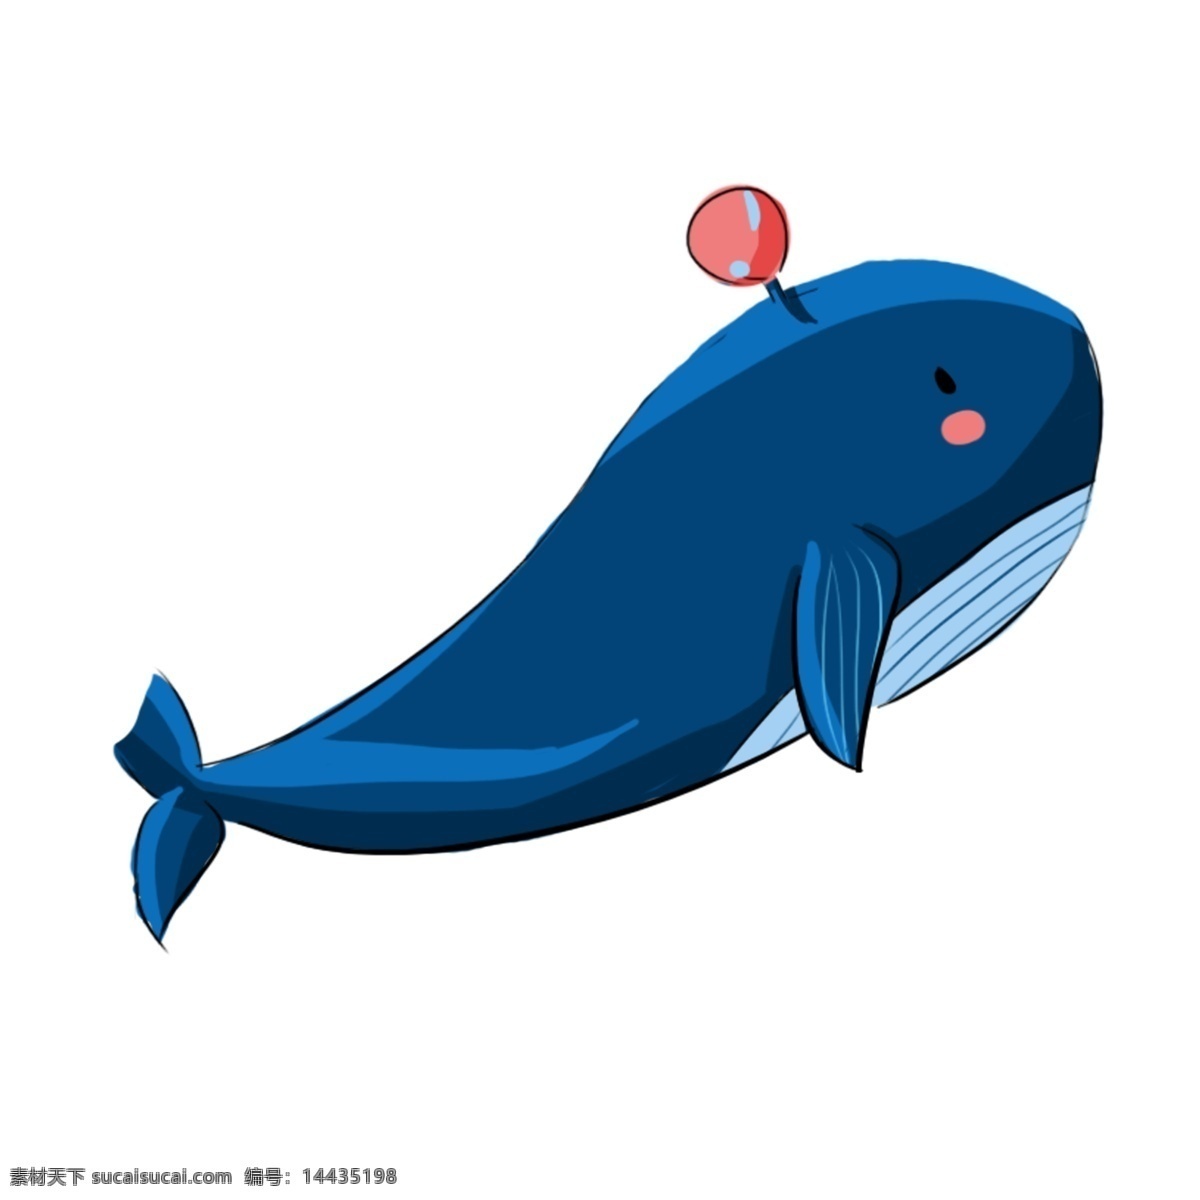 卡通 清新 蓝色 鲸鱼 透明 插画元素 蓝色鲸鱼 可爱风 动物 卡通元素